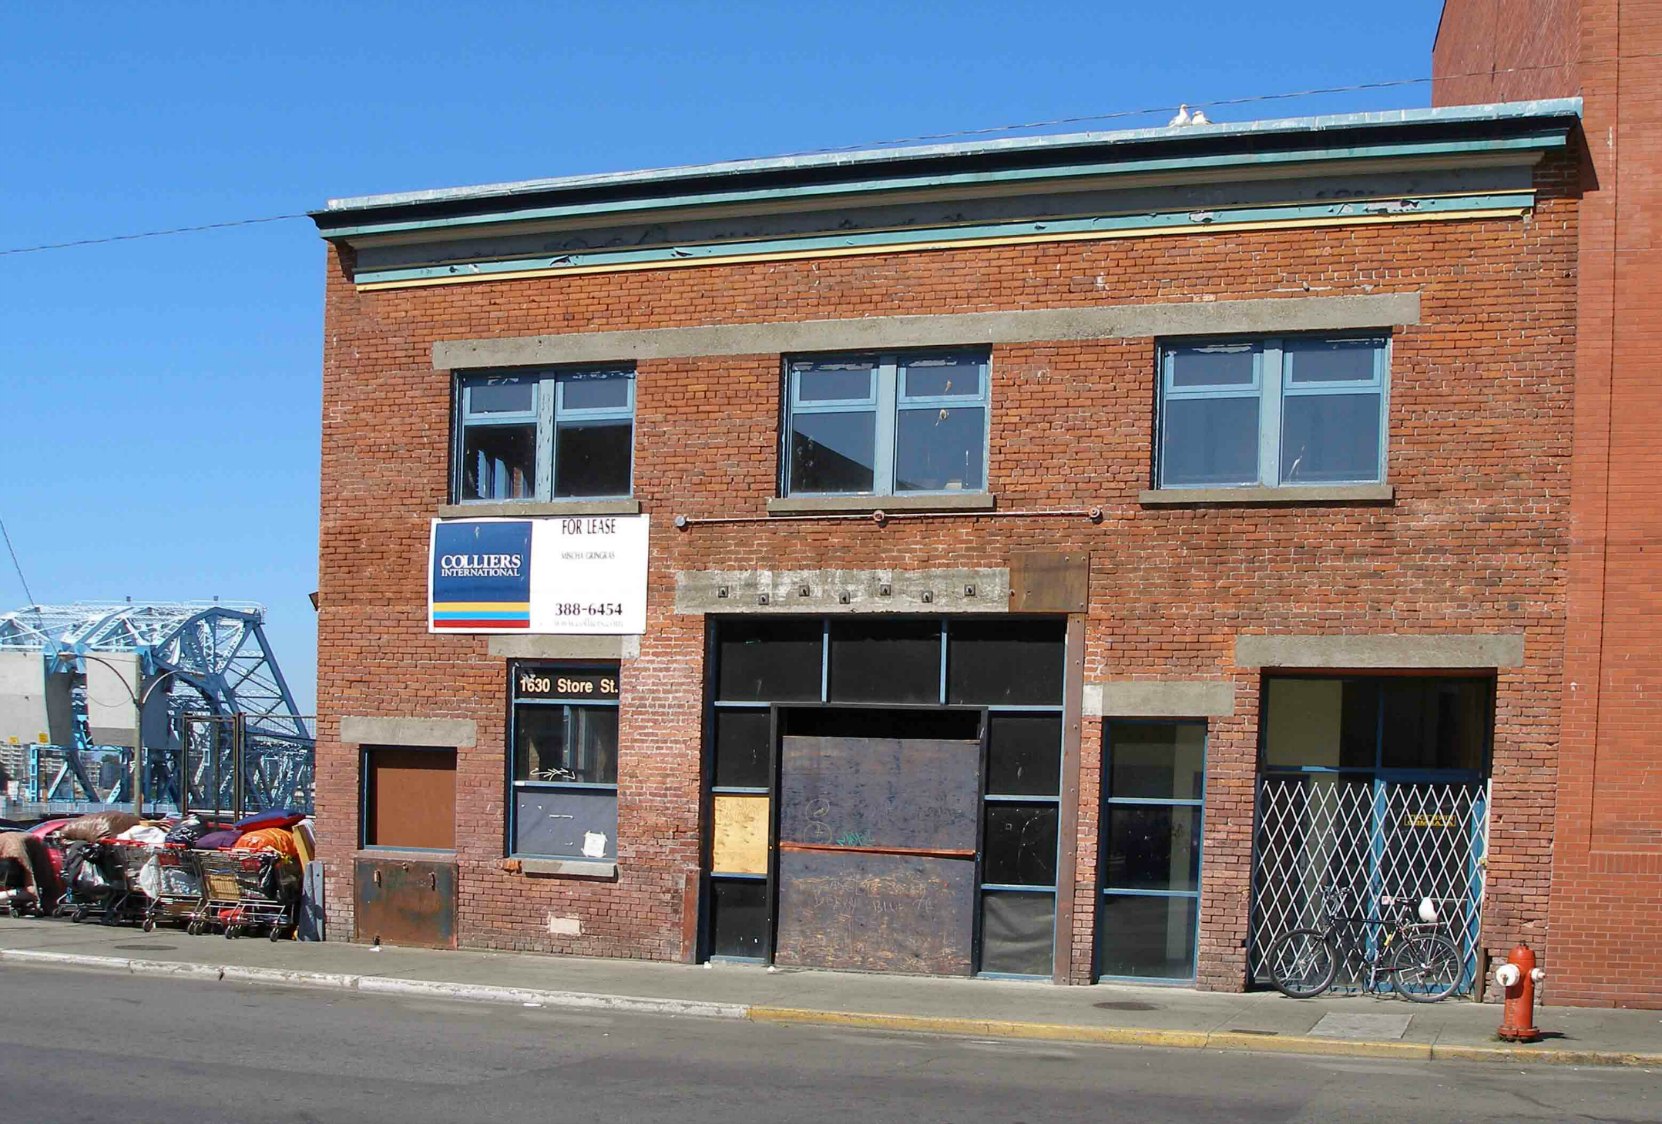 1630 Store Street in 2006.